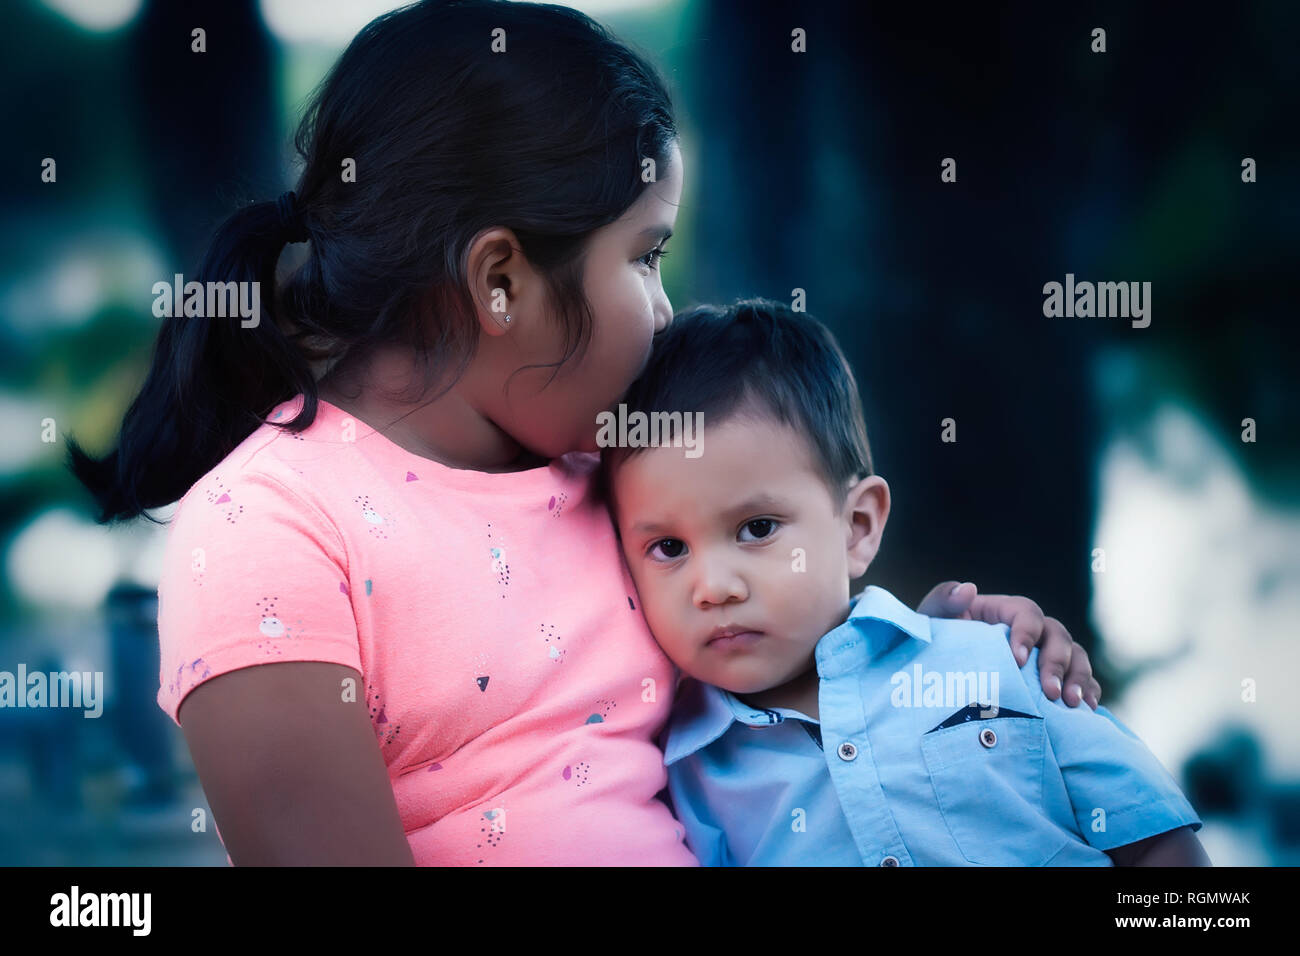 Ilustración de un joven junto con su hermana mayor Fotografía de stock -  Alamy